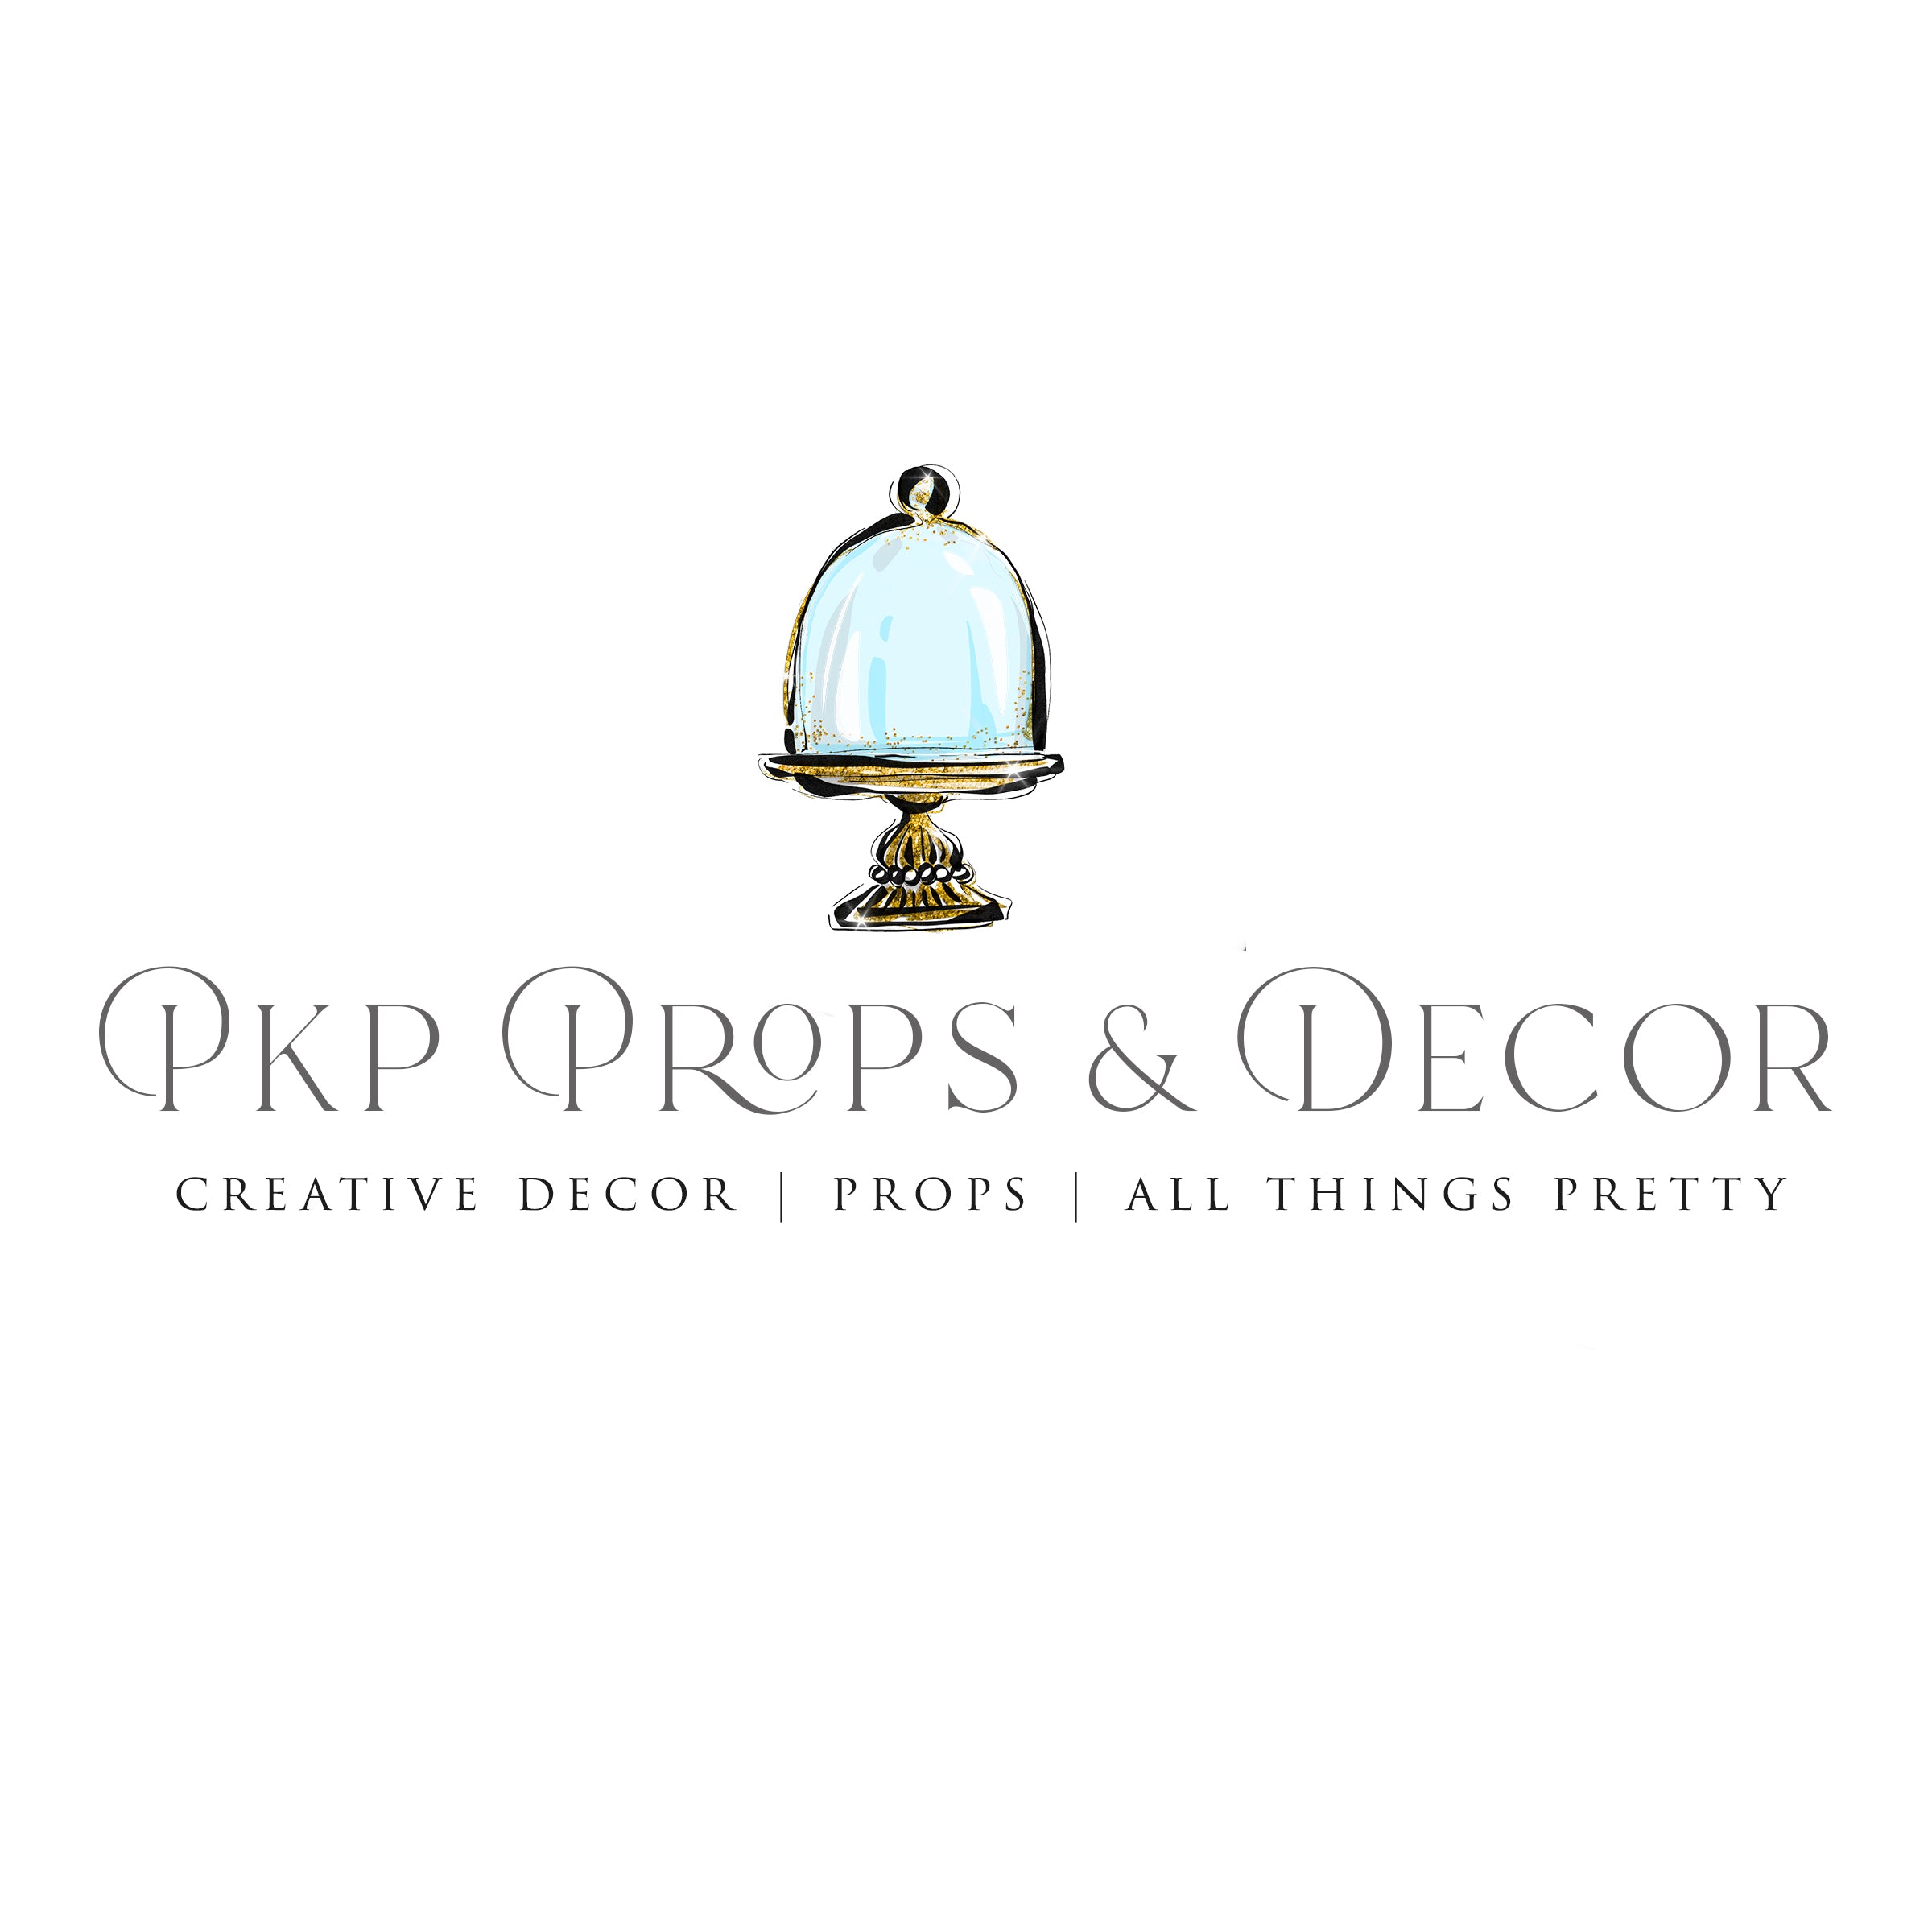 PKP PROPS & DECOR